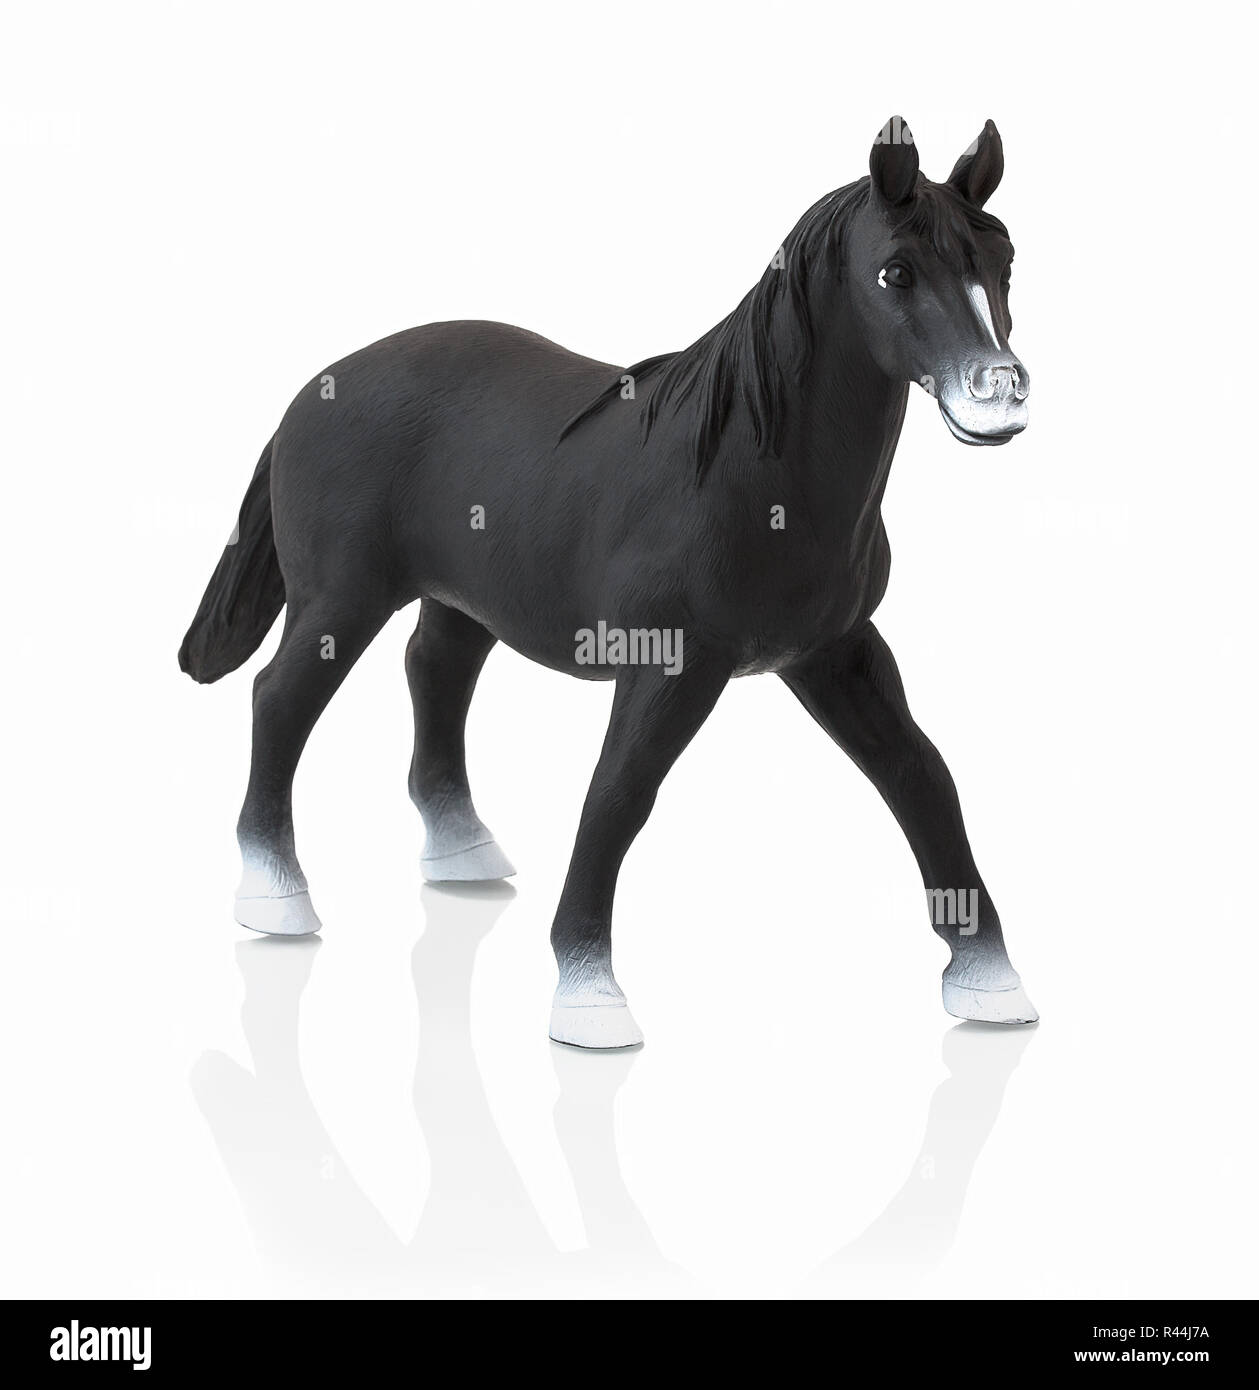 Cavallo nero toy isolato su sfondo bianco con ombre di riflessione. Per bambini in plastica di piccole dimensioni cavallo nero su sfondo bianco. Plastica in miniatura o modello Foto Stock